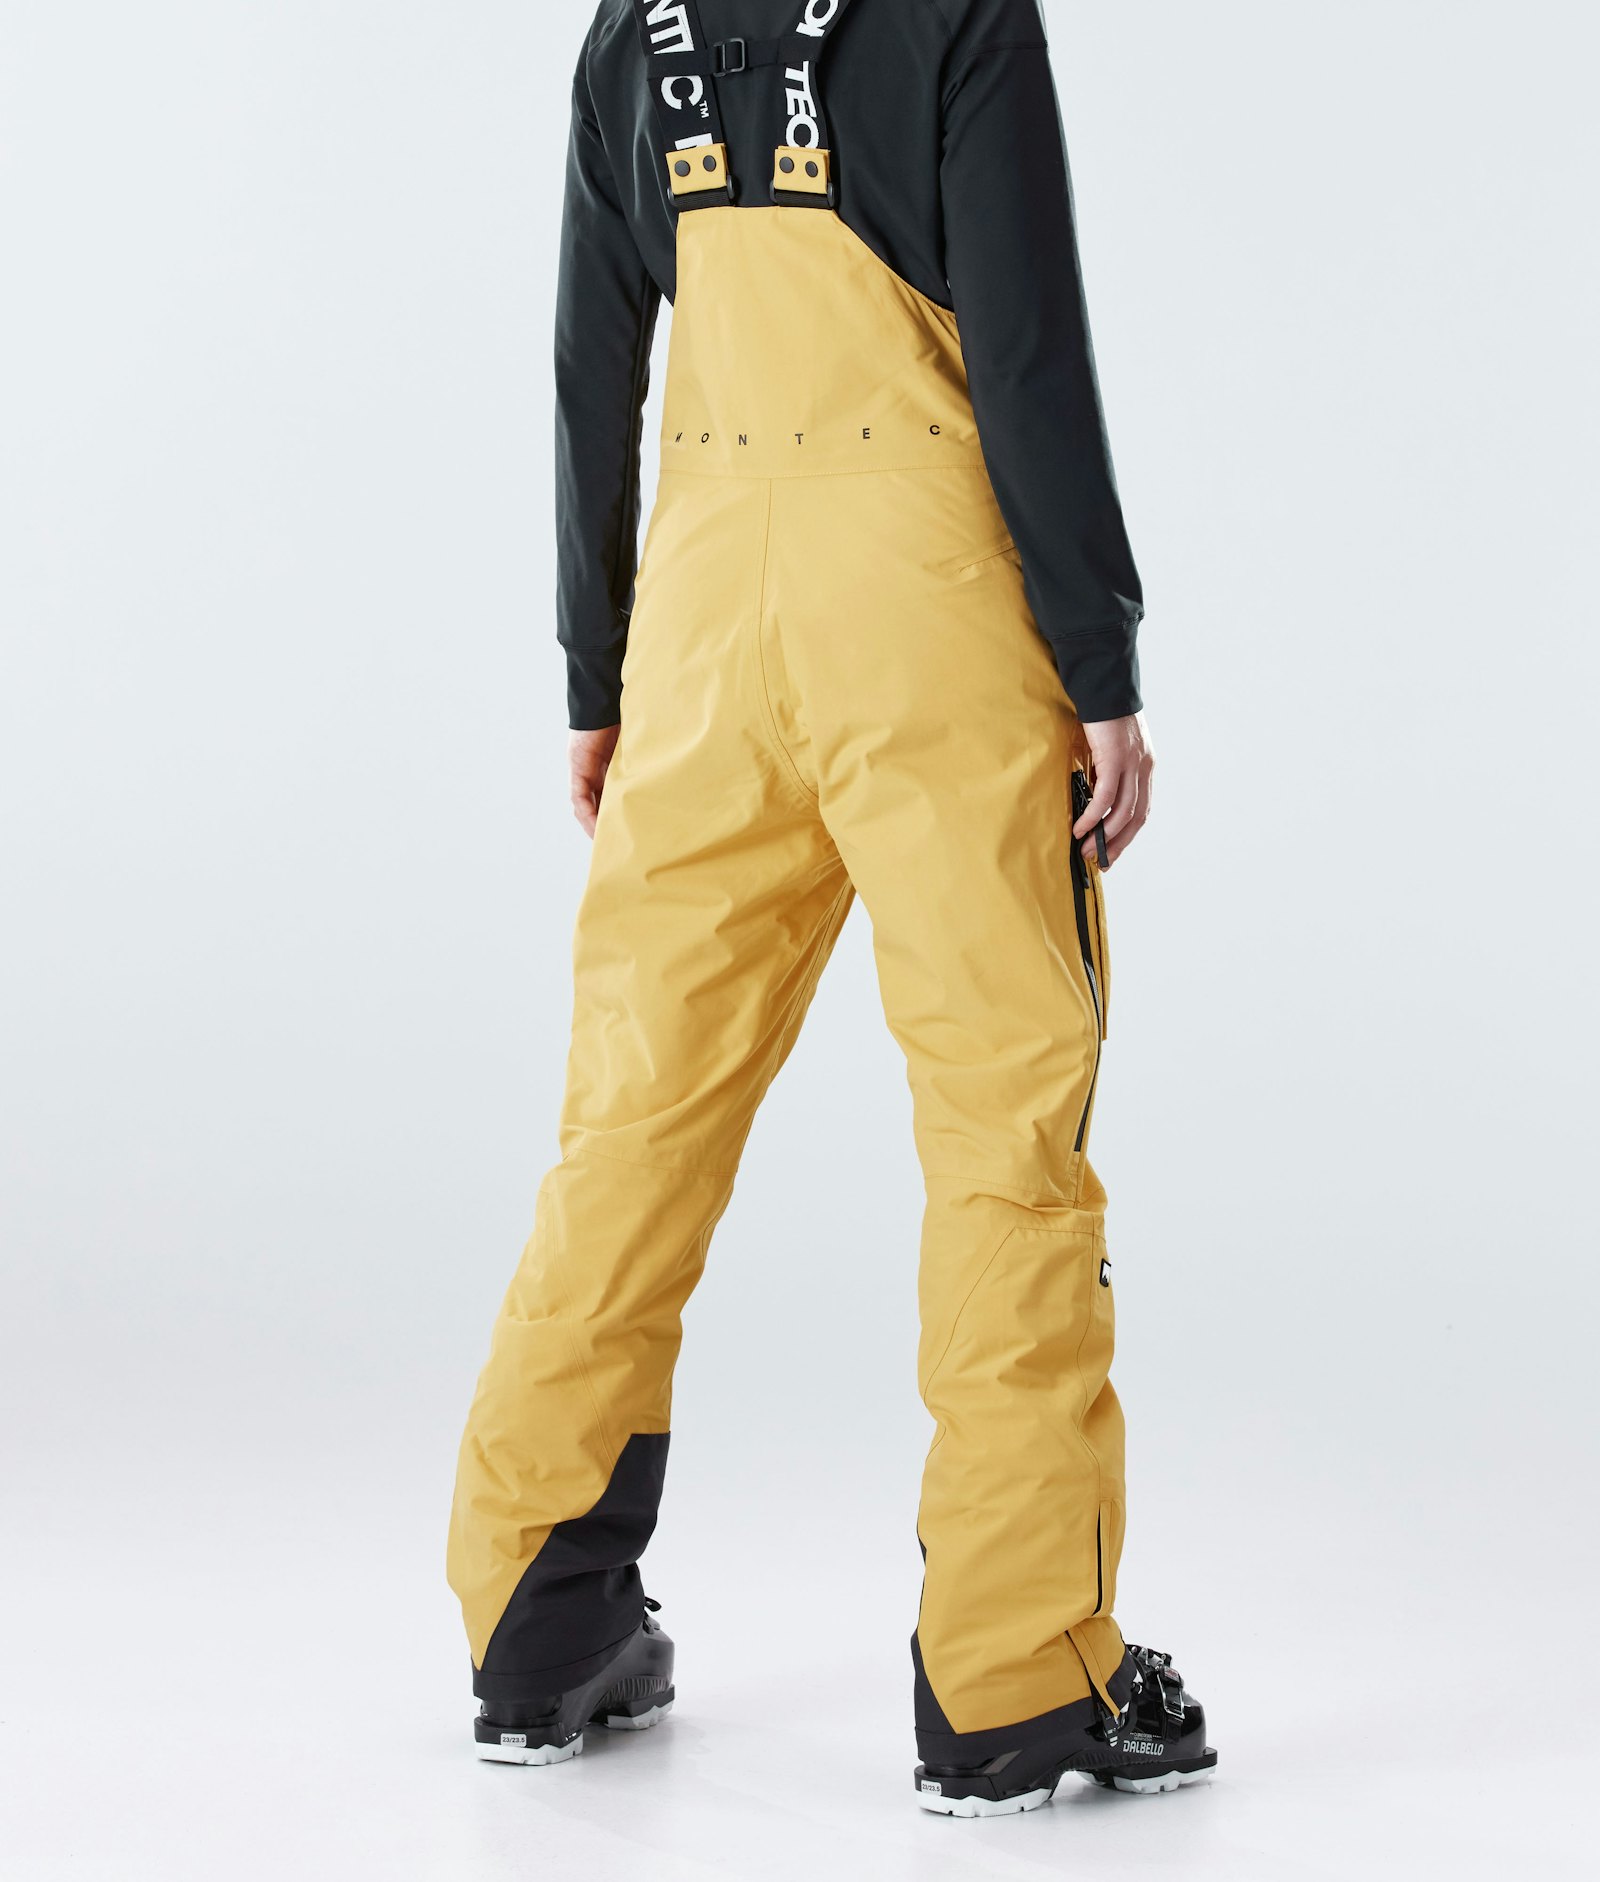 Montec Fawk W 2020 Pantalon de Ski Femme Yellow